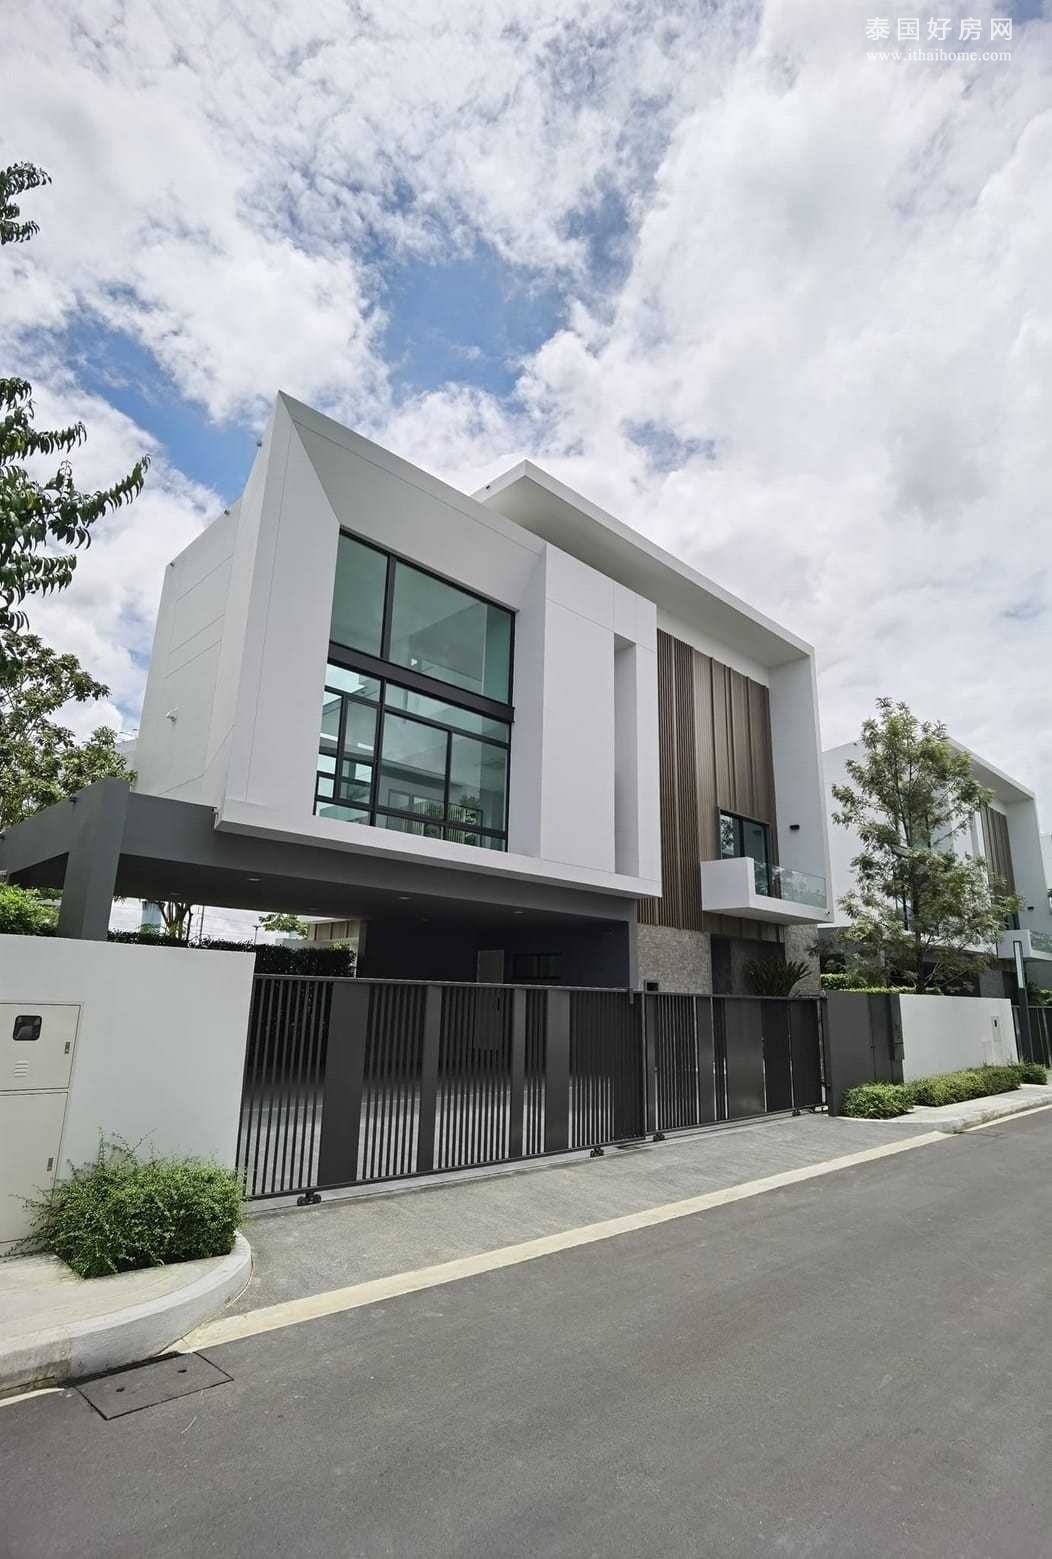 沙攀松区 | Nantawan Rama 9 – Srinakarin 独栋别墅出售 4卧 380平米 4500万泰铢